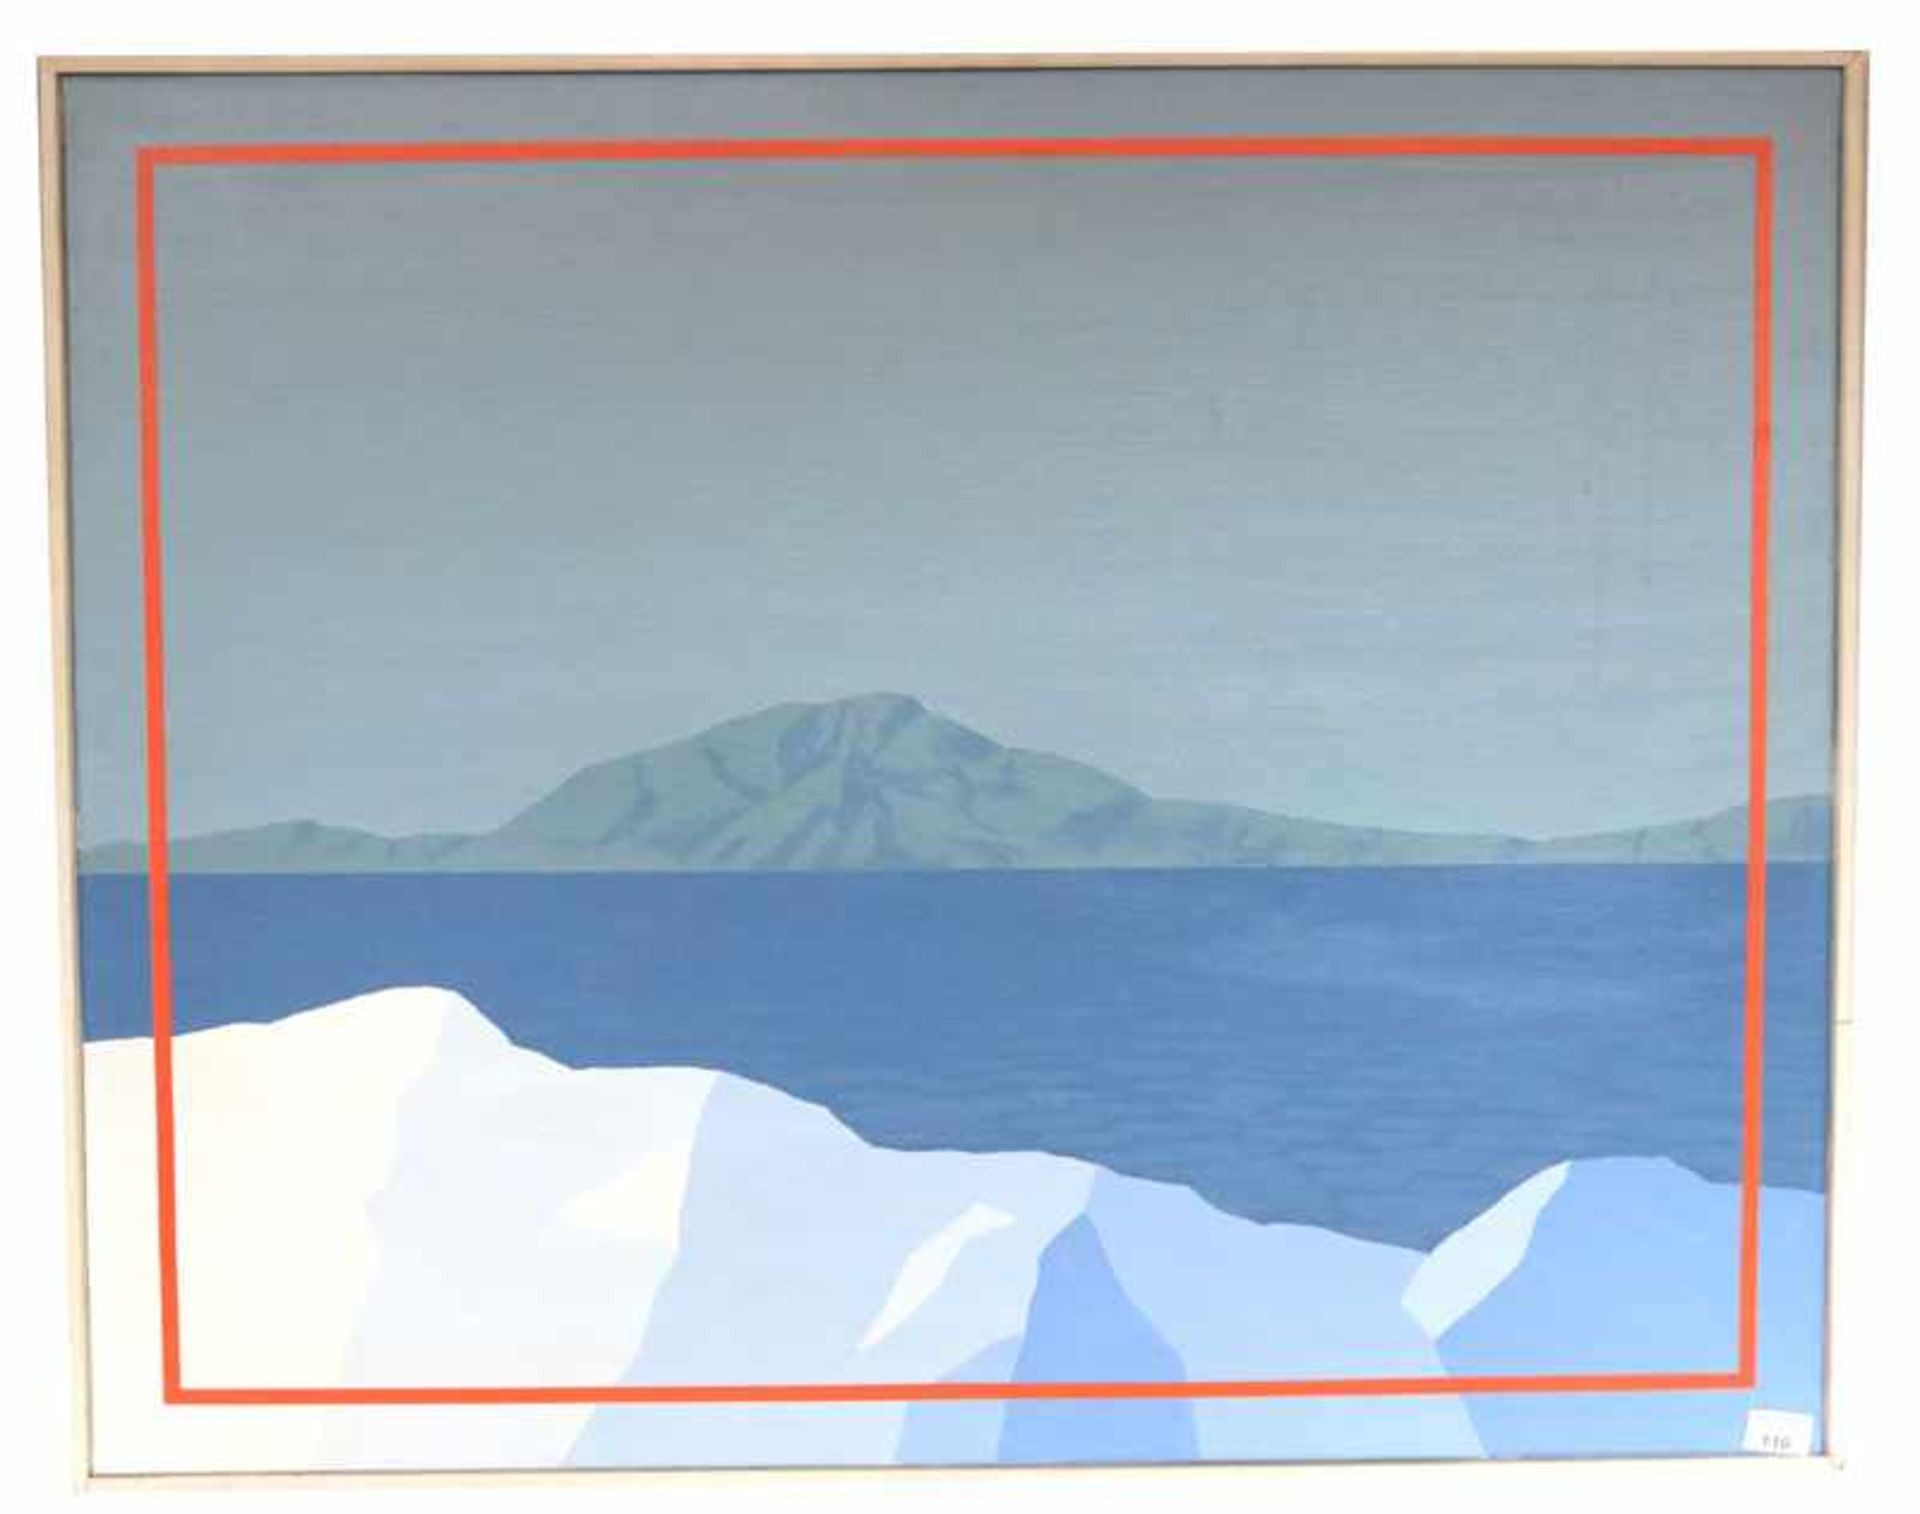 Gemälde Acryl/LW 'Berge mit See', rückseitig signiert Rolf Liese, datiert 28.2.72, * 1937 Hagen/